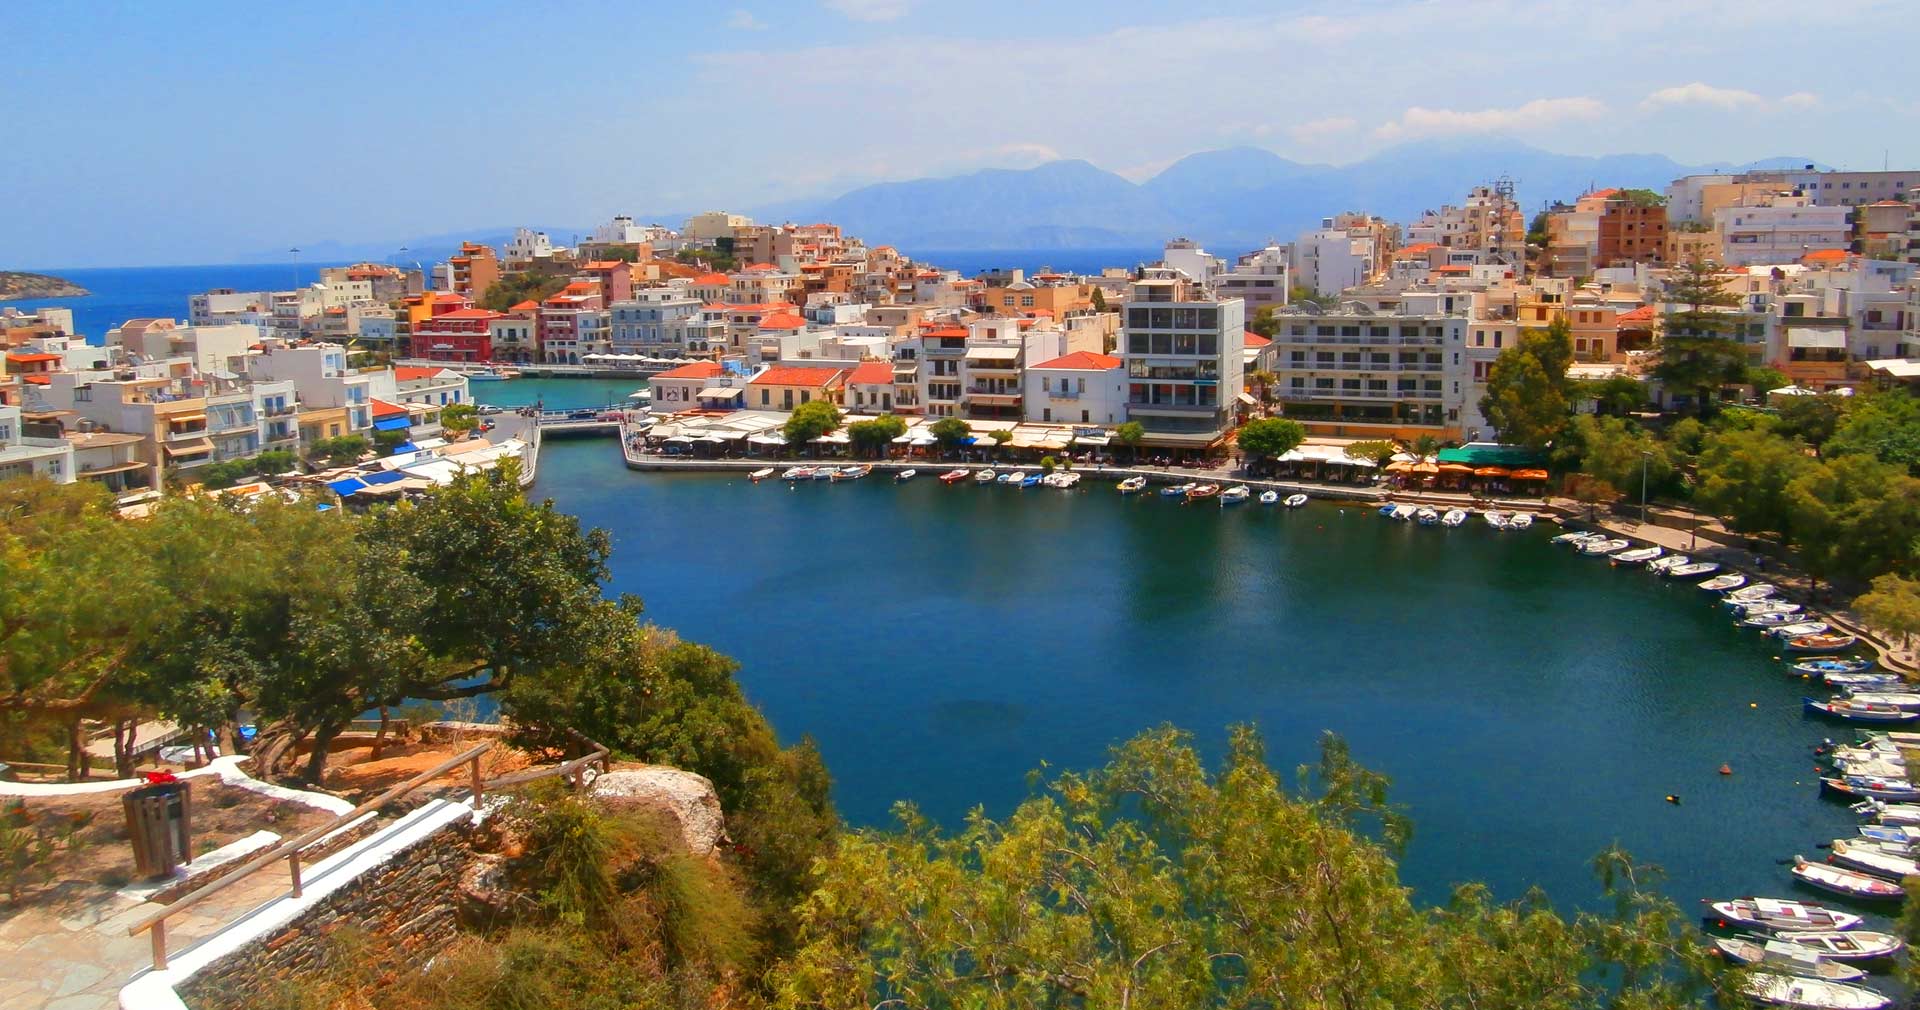 Κρήτη: Συναγερμός για επικίνδυνα χημικά σε ξενοδοχείο στον Άγιο Νικόλαο